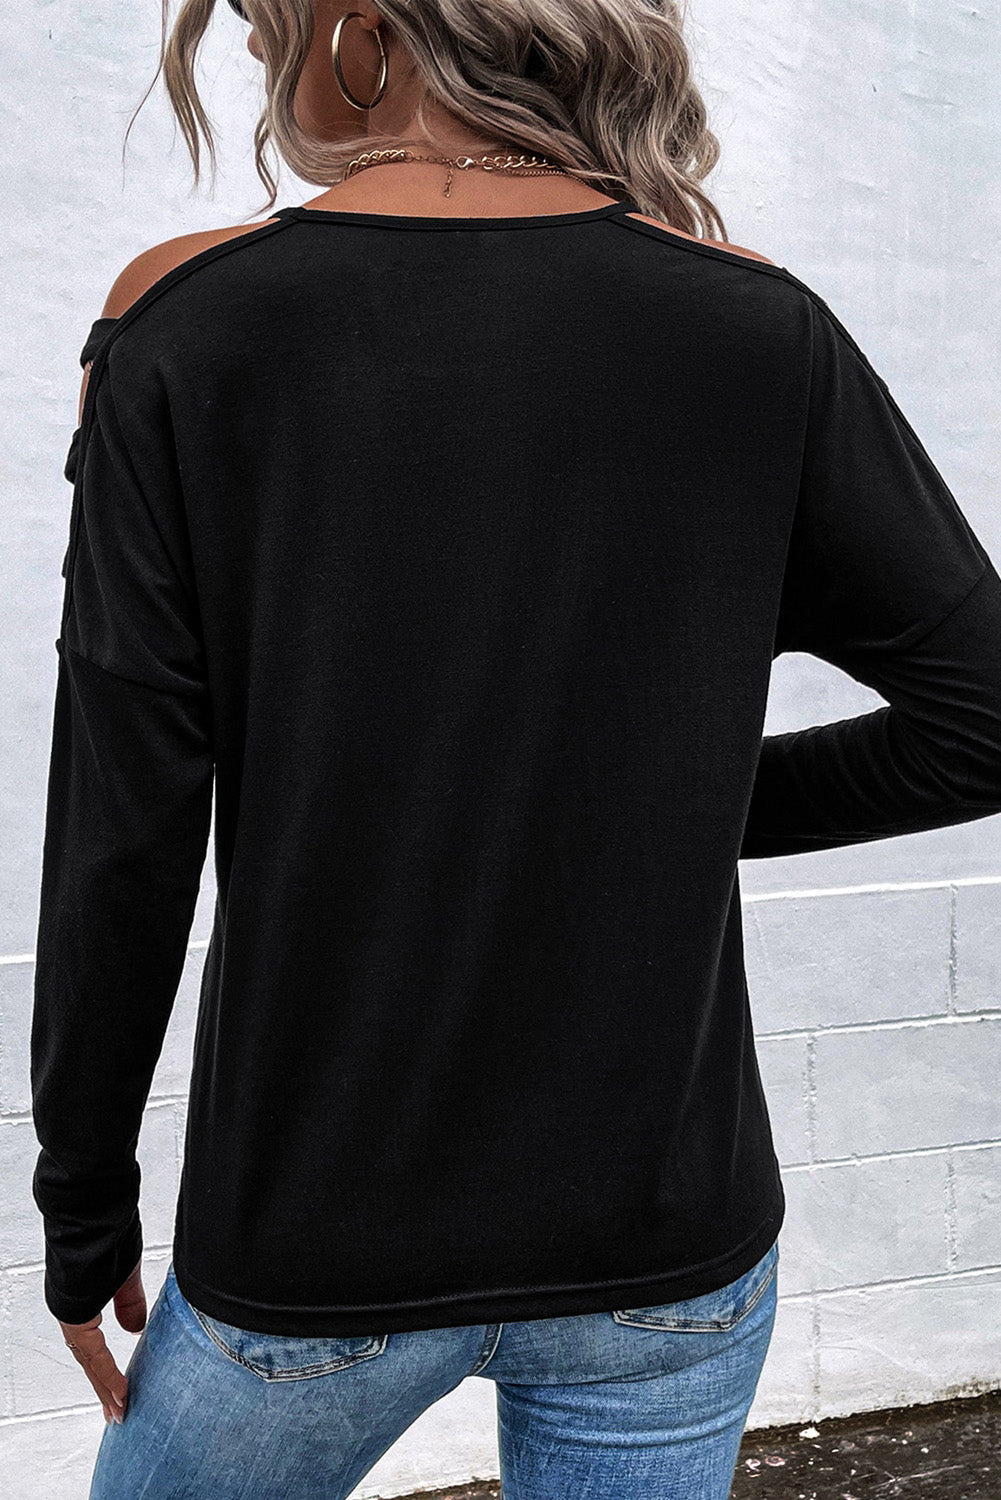 Crna majica dugih rukava s hladnim izrezima na ramenima